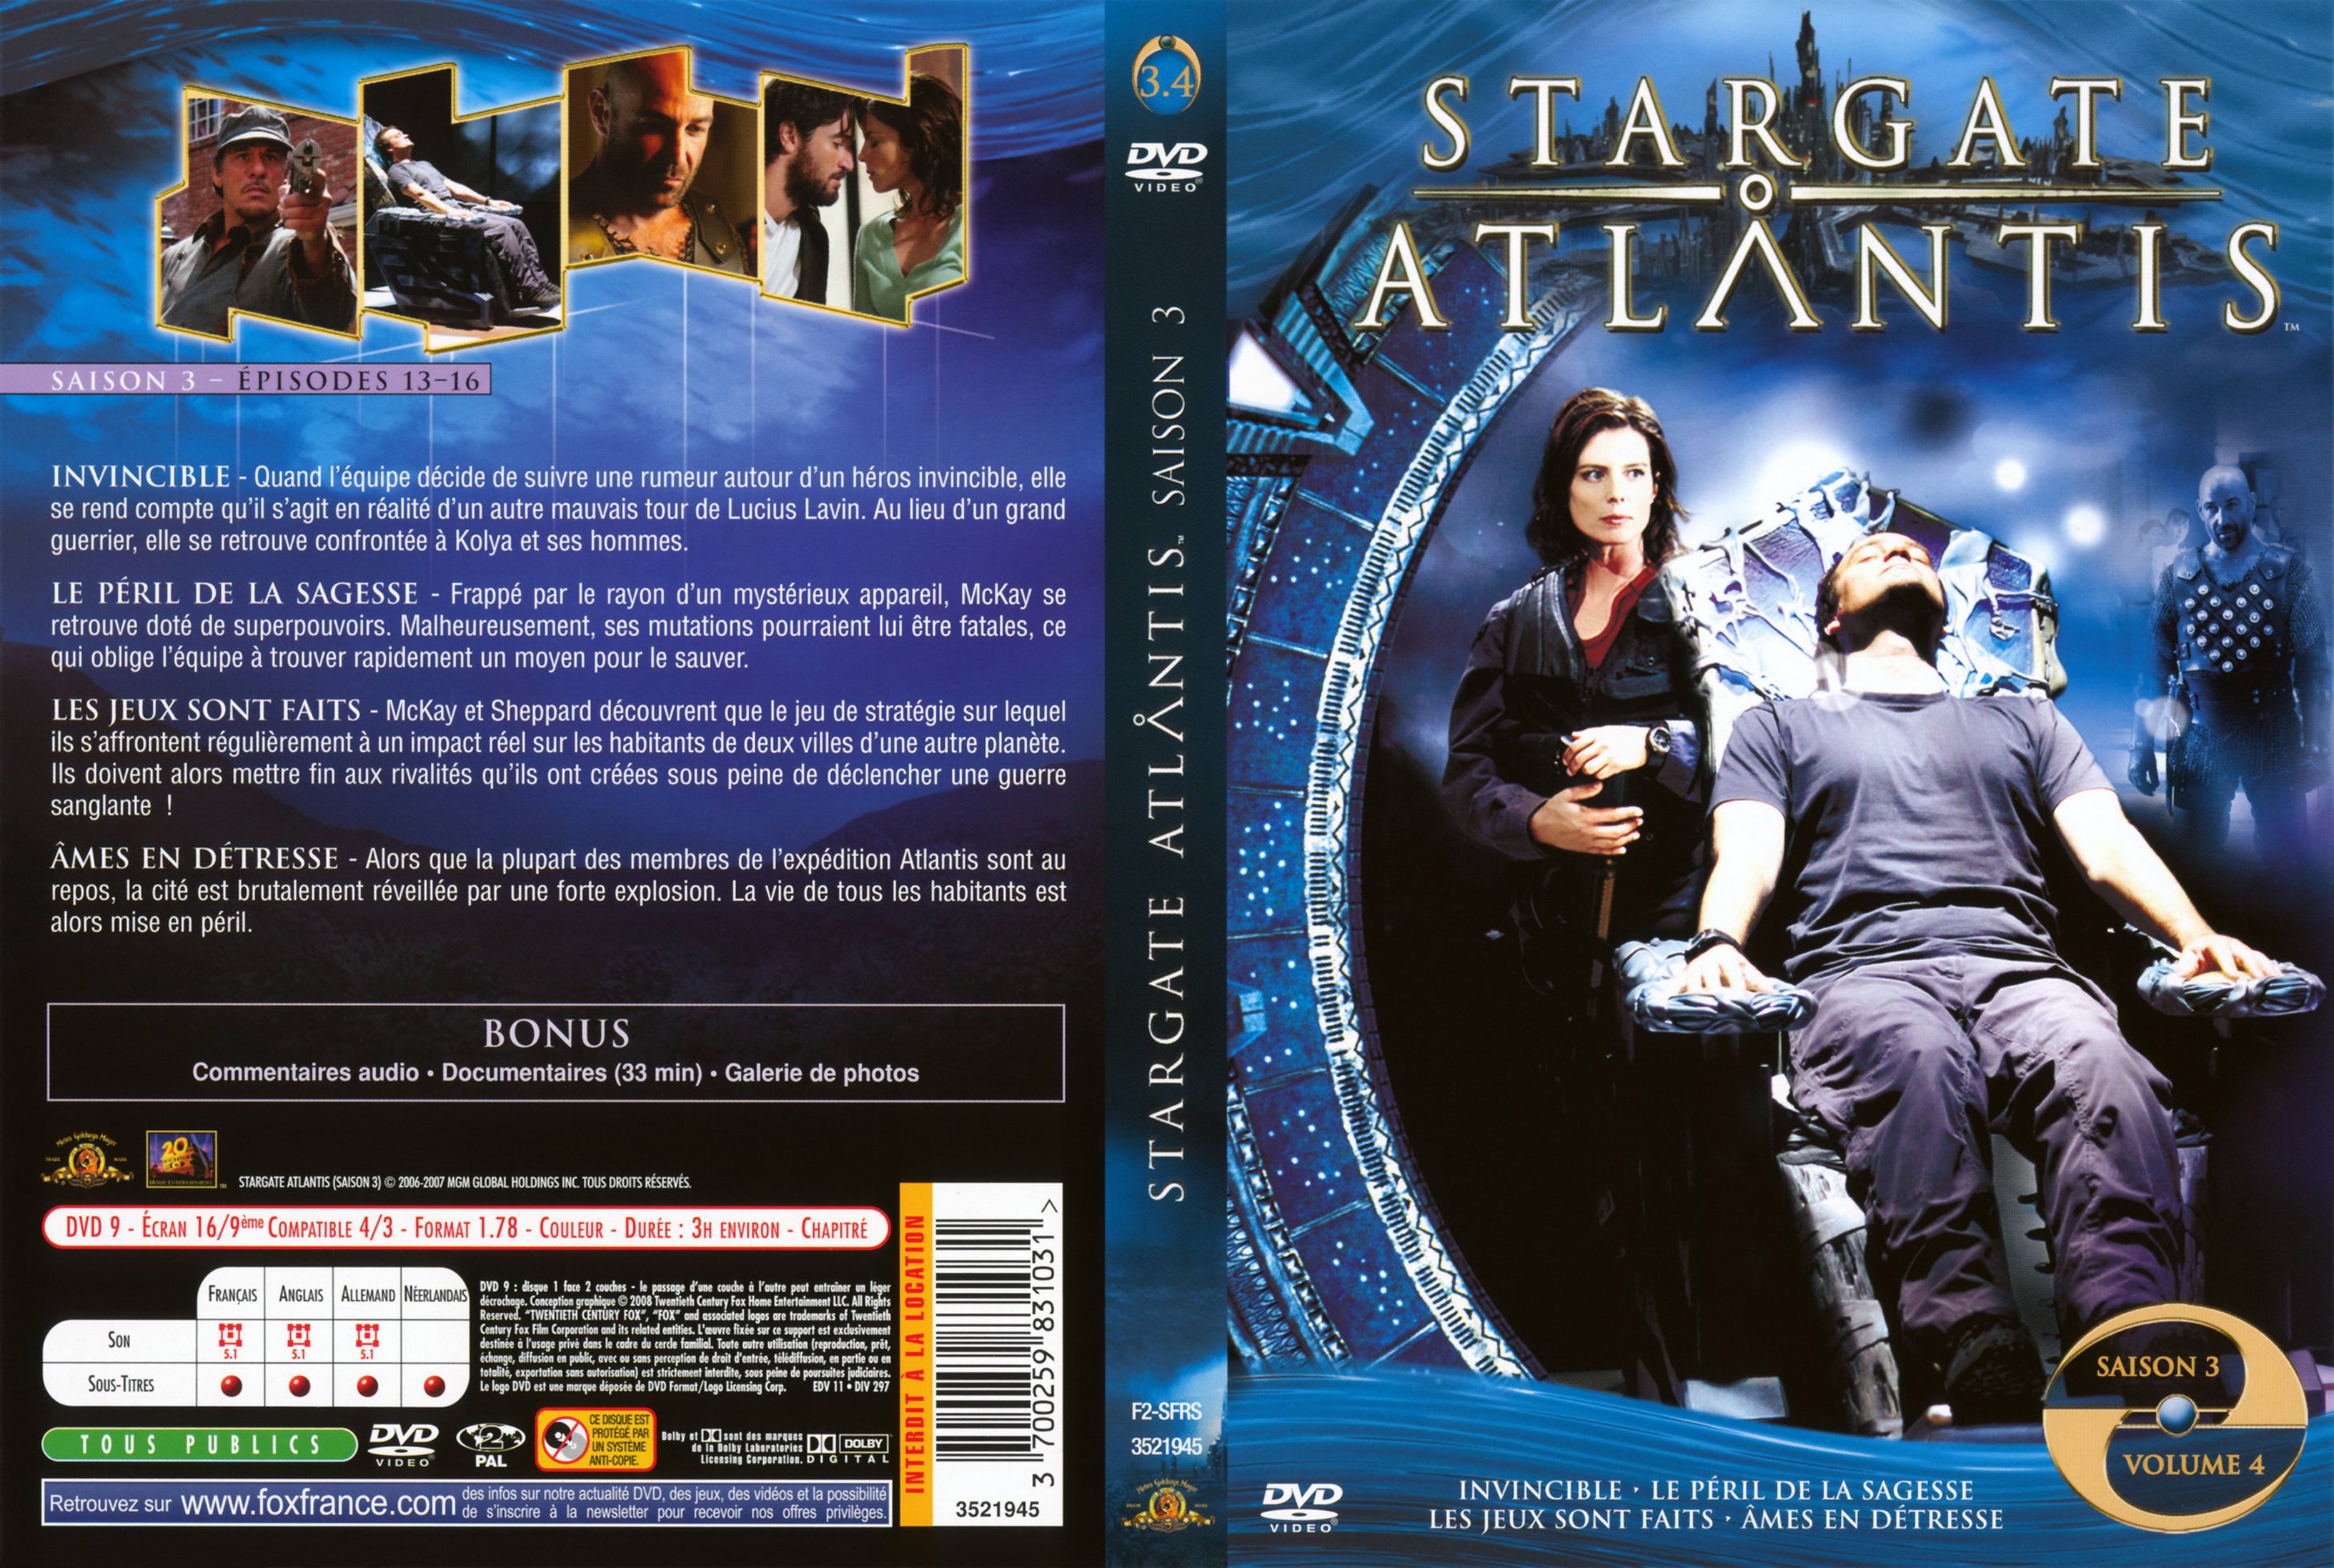 Jaquette DVD Stargate Atlantis Saison 3 vol 4